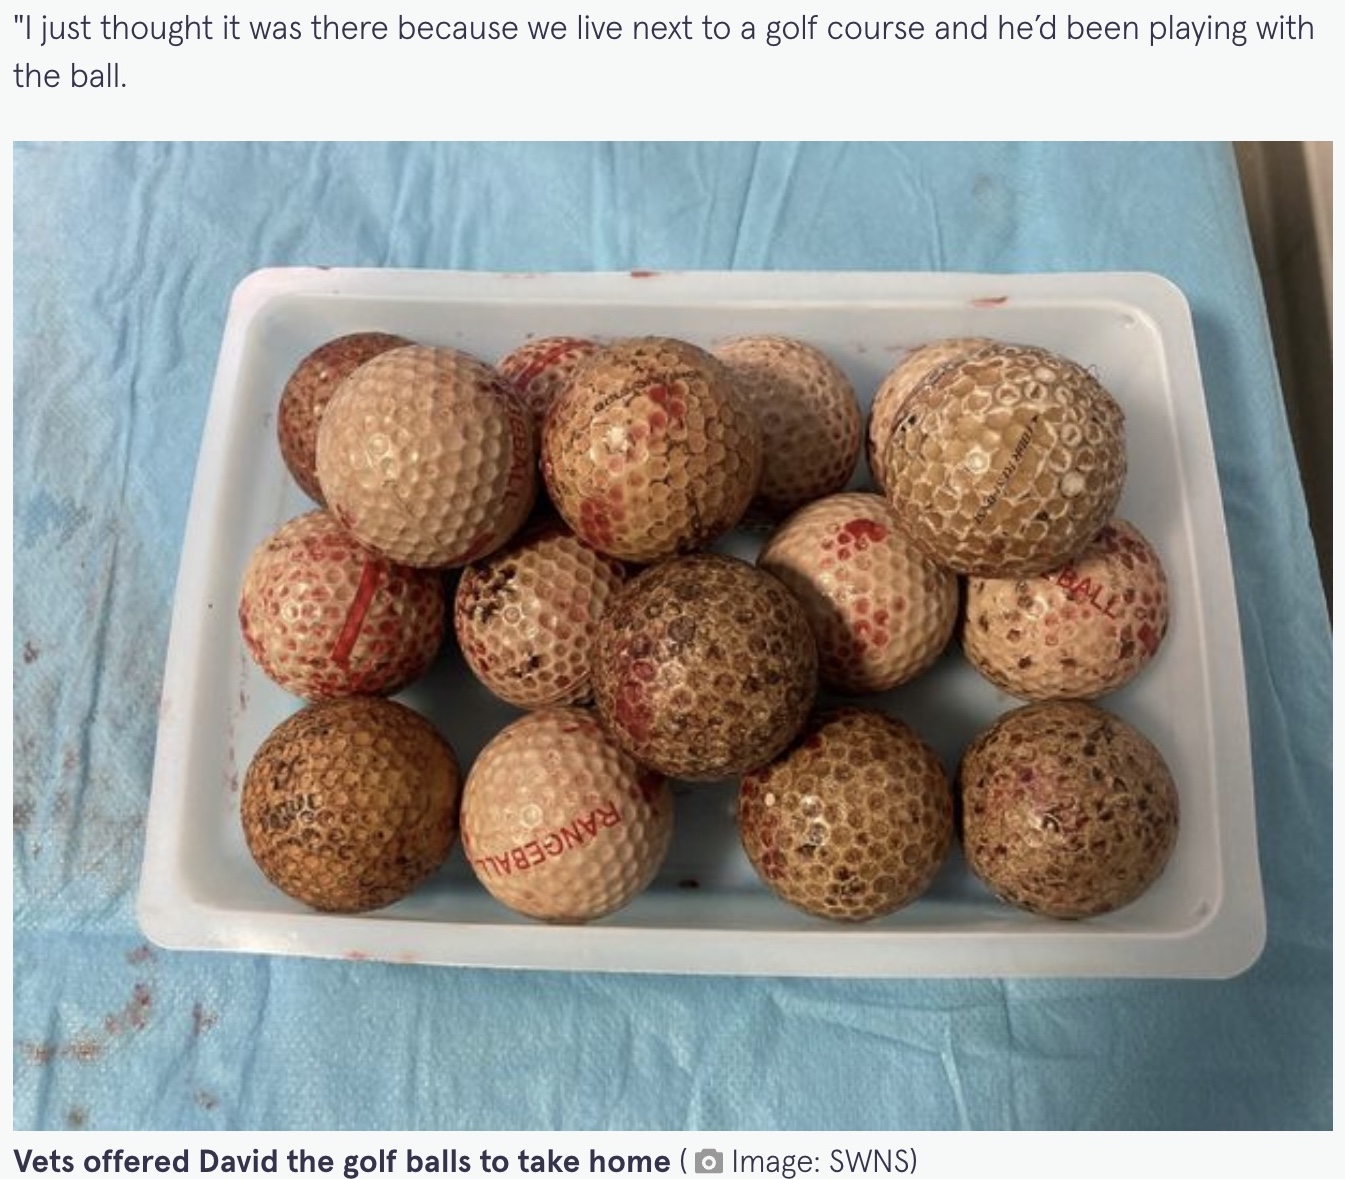 摘出された16個のゴルフボール（画像は『The Mirror　2022年5月9日付「Owner worried after dog stops eating - then finds 16 golf balls in his tummy」（Image: SWNS）』のスクリーンショット）